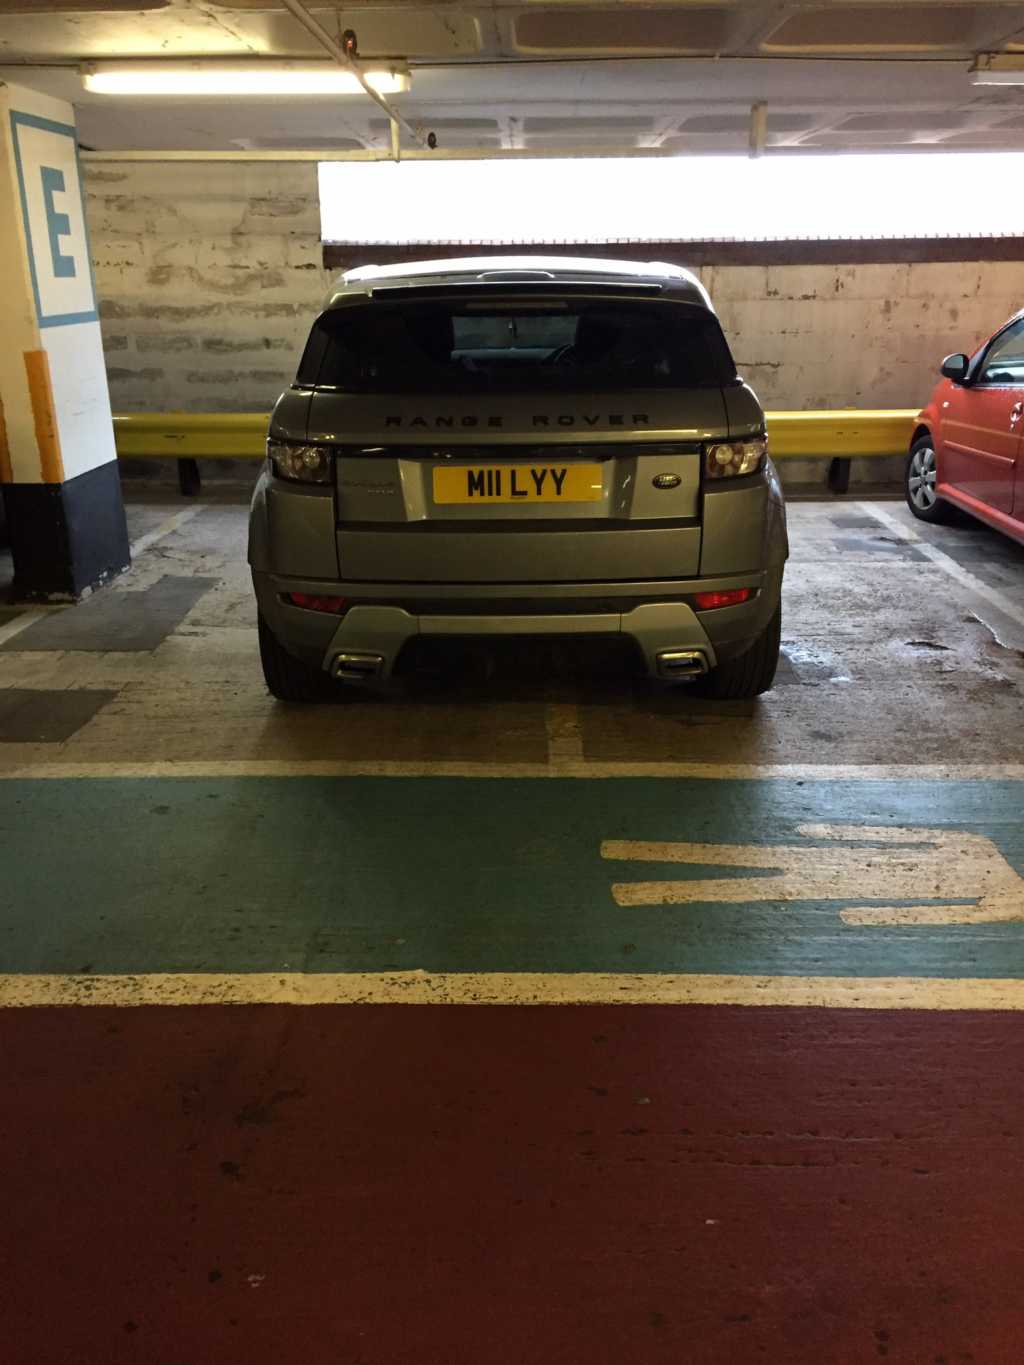 M11 LYY displaying crap parking